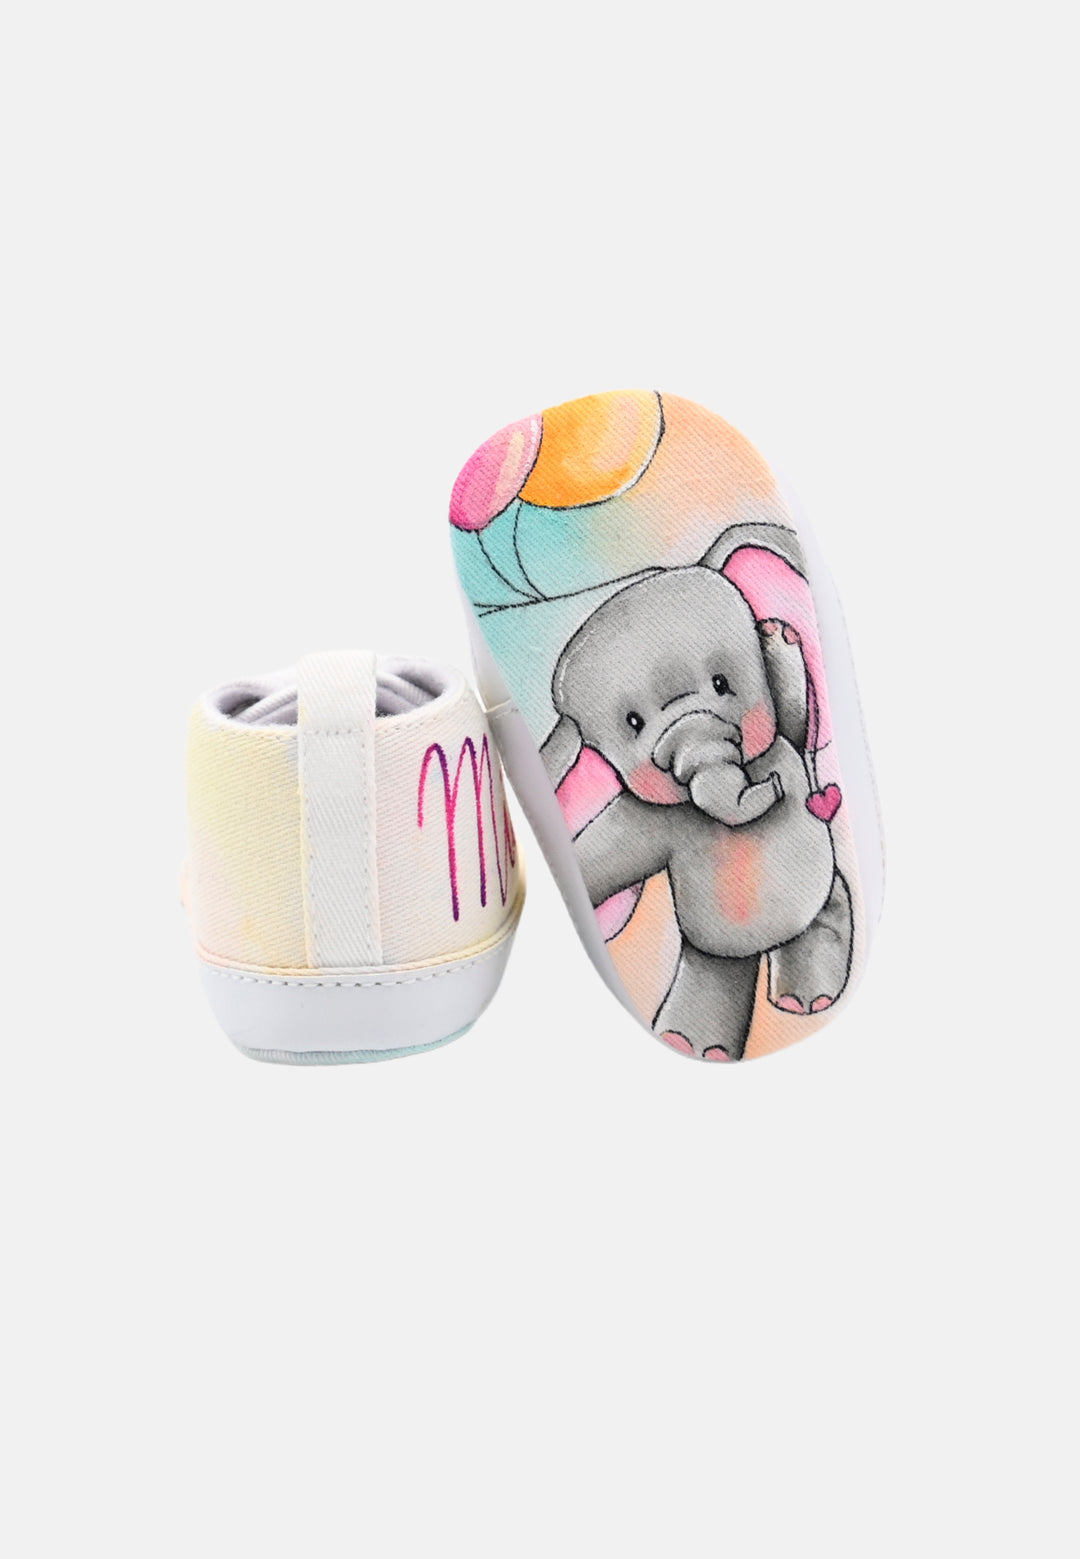 Scarpine per neonata Elefantino e orsetto